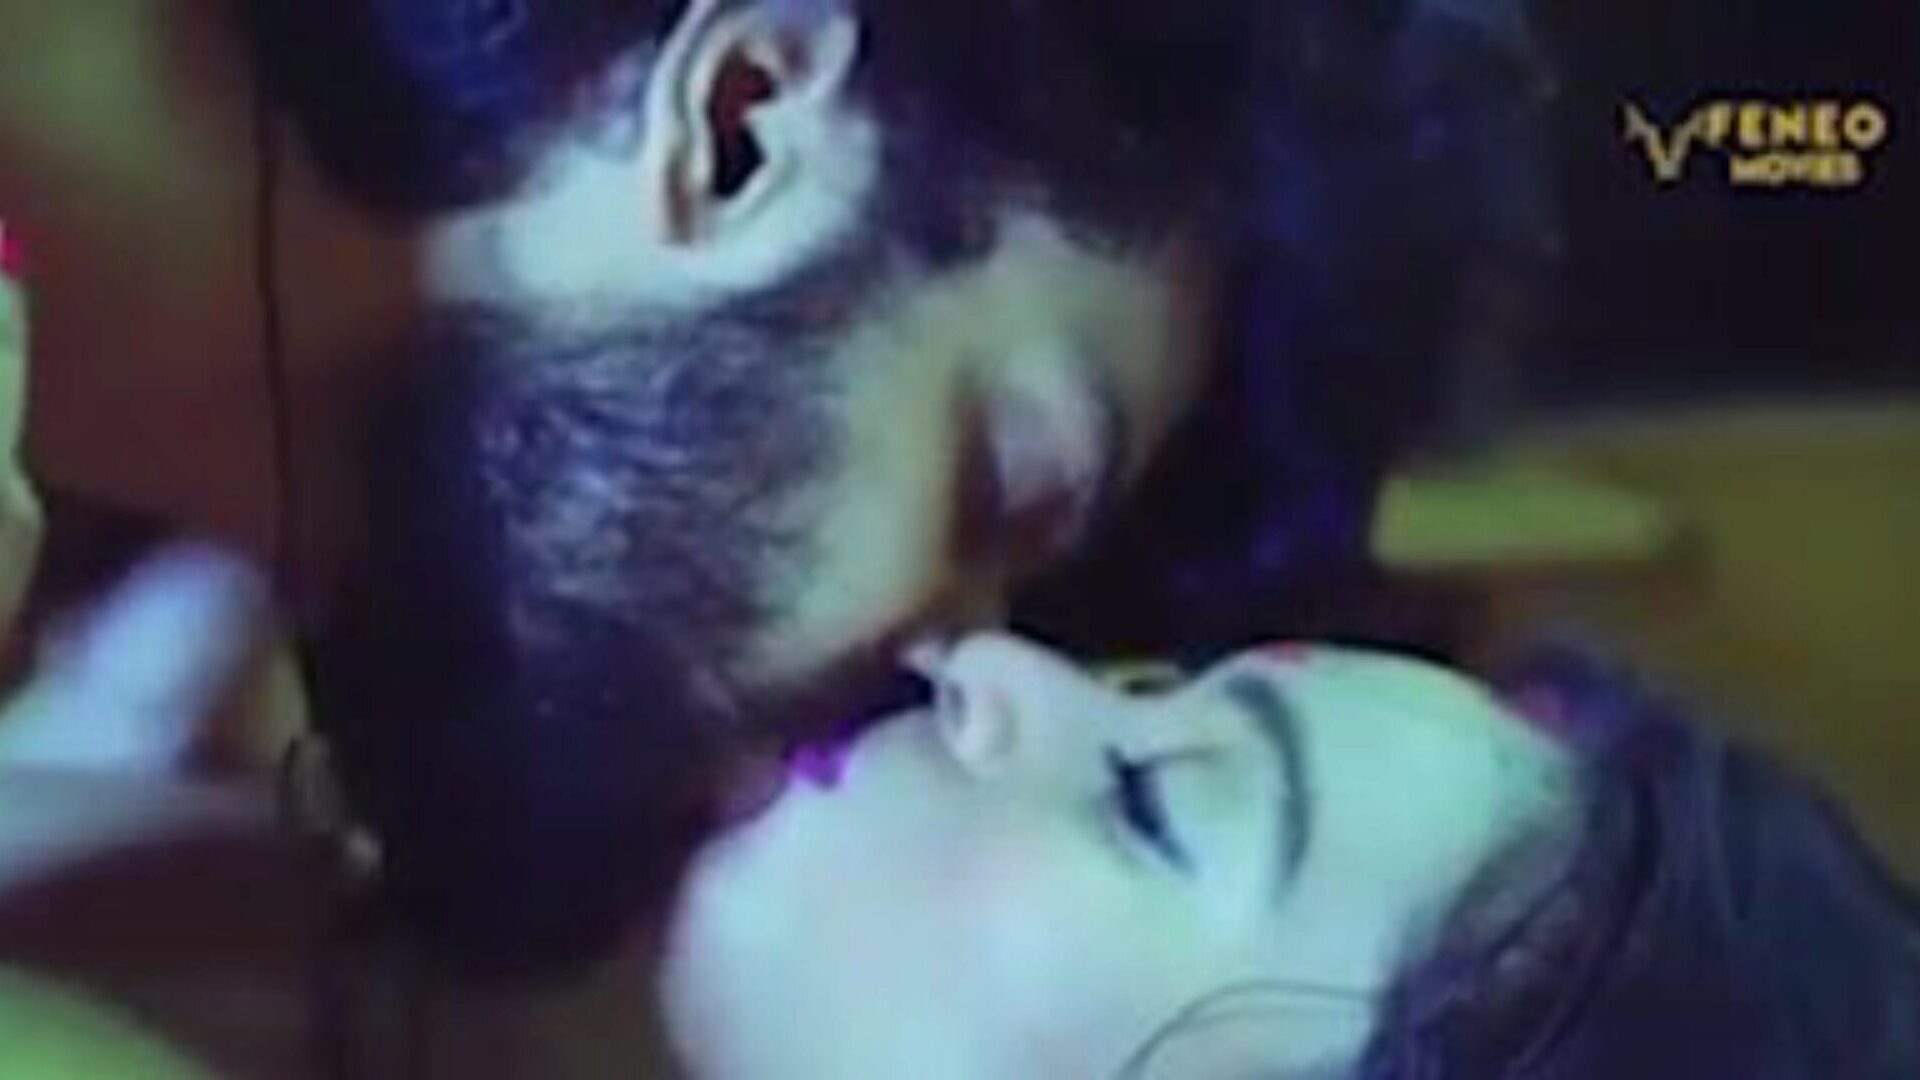 film indiano pron: gratis nuovo video porno indiano 75 guarda episodi di sesso tube indiano pron film gratis per tutti su xhamster, con la collezione prepotente di nuove scene di scene di film porno indiano indiano reddit & tnaflix gratis